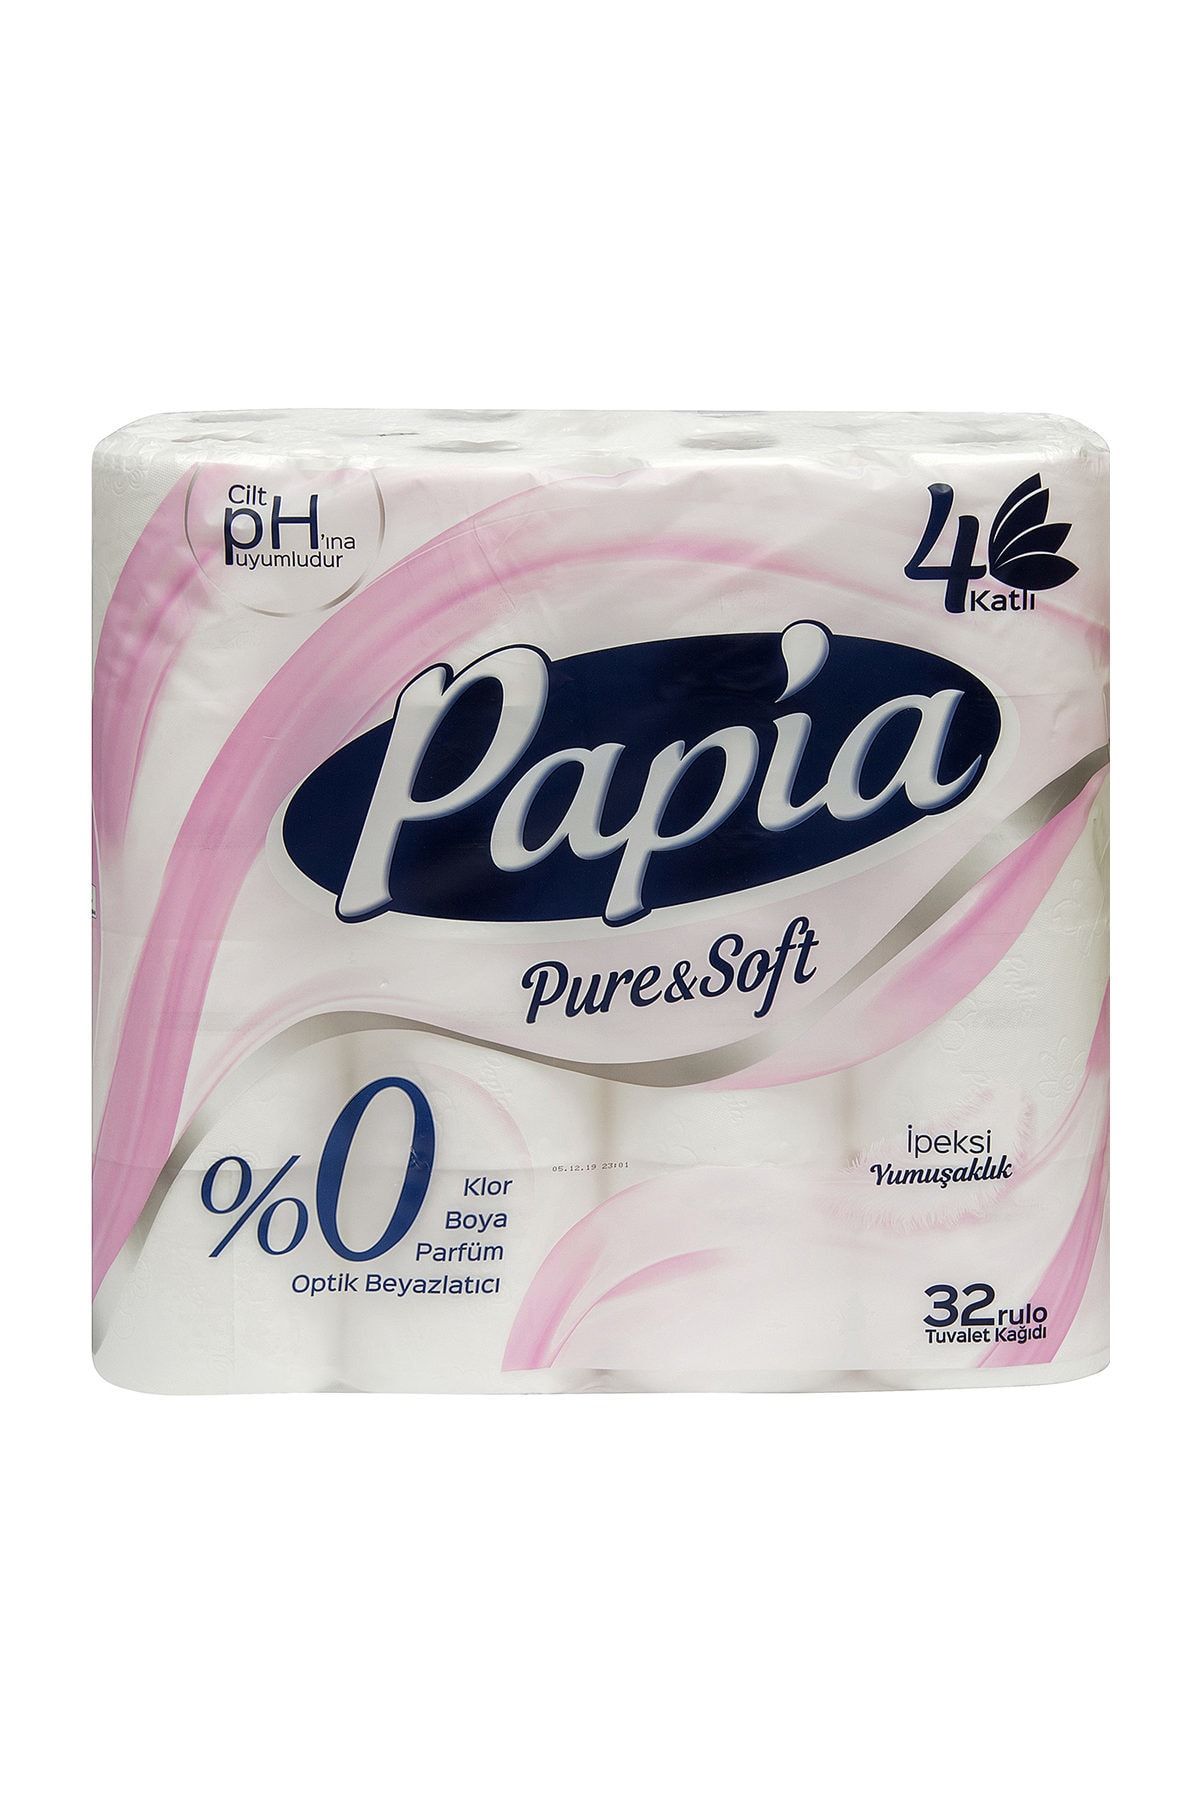 Papia Pure&Soft 4 Katlı Tuvalet Kağıdı 32'li